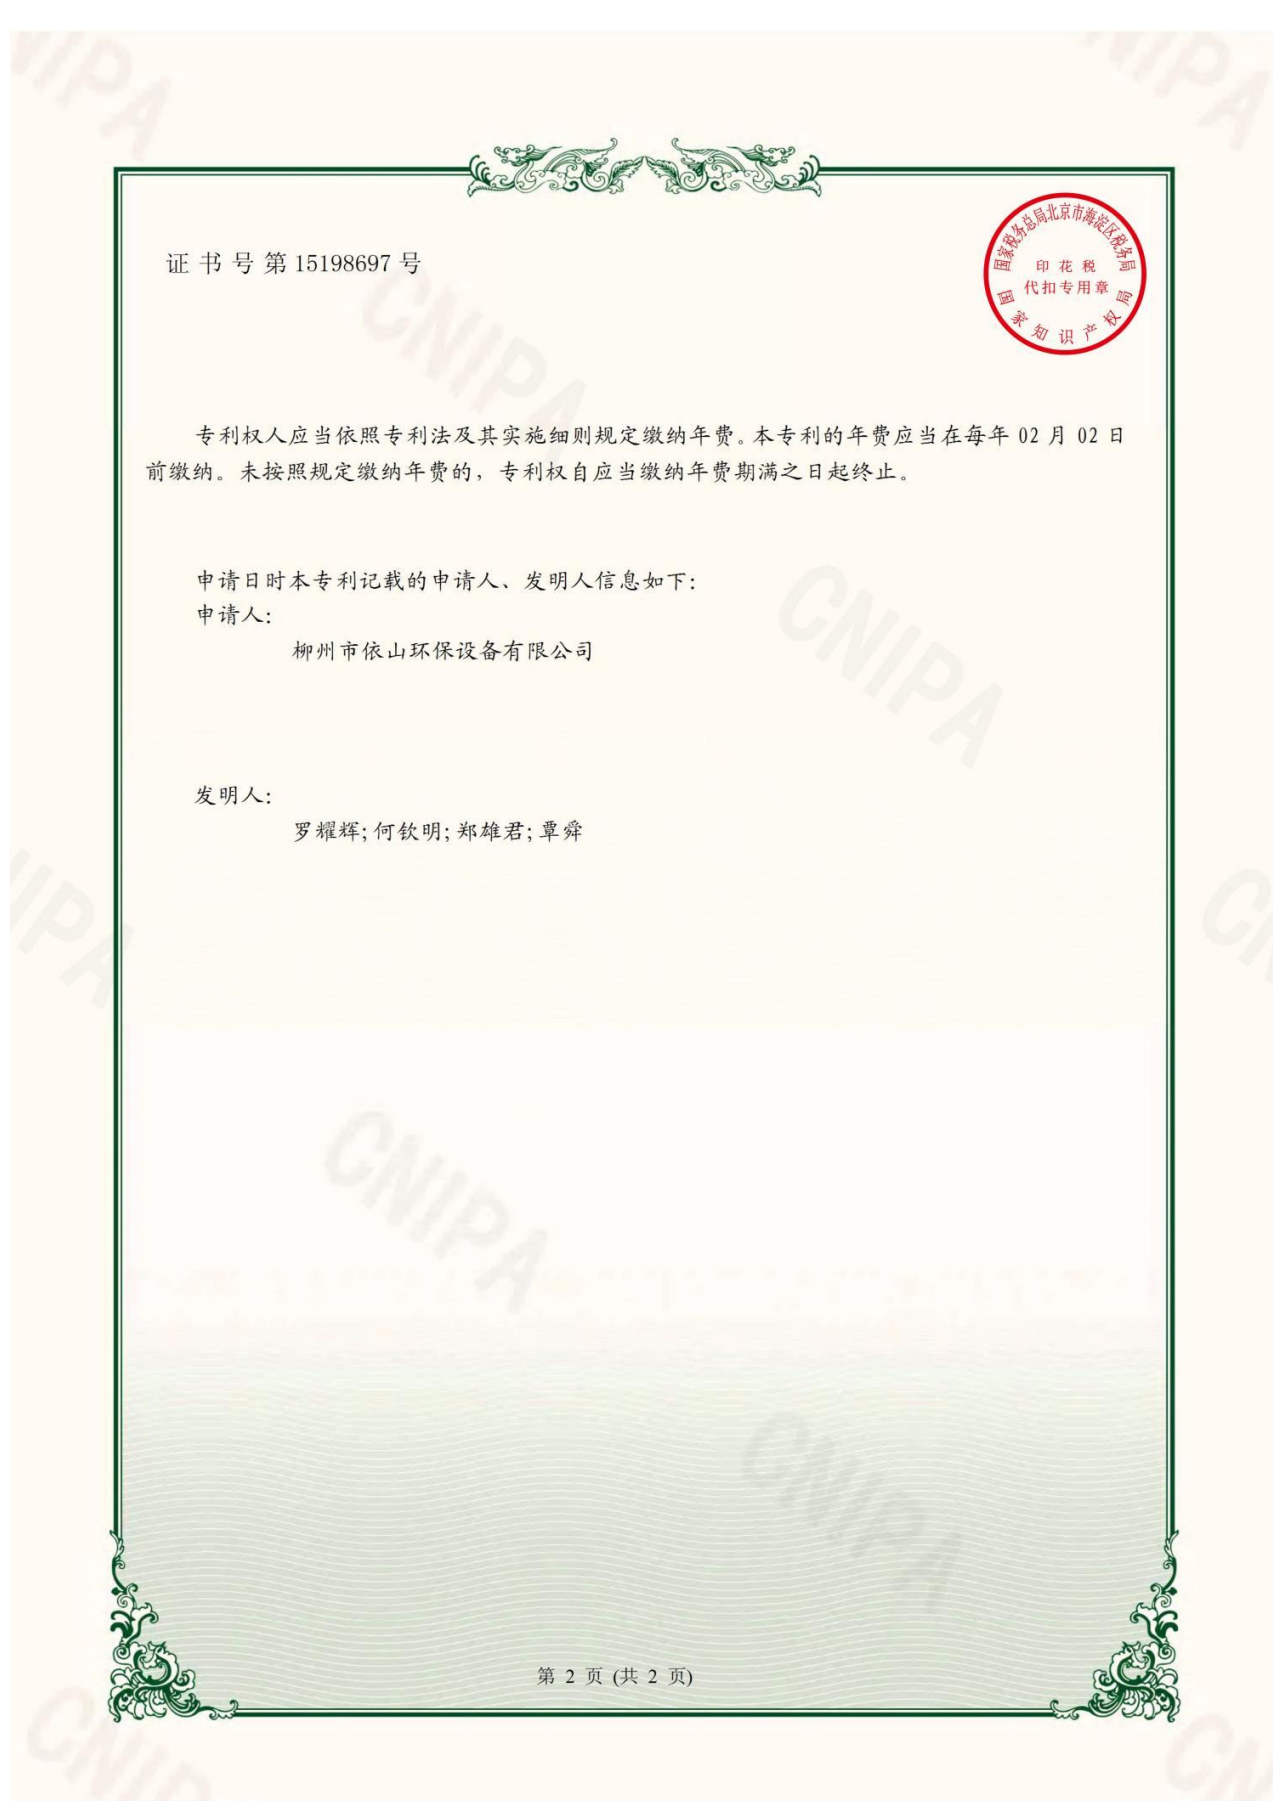 柳州市依山环保设备有限公司资质文件_11.jpg